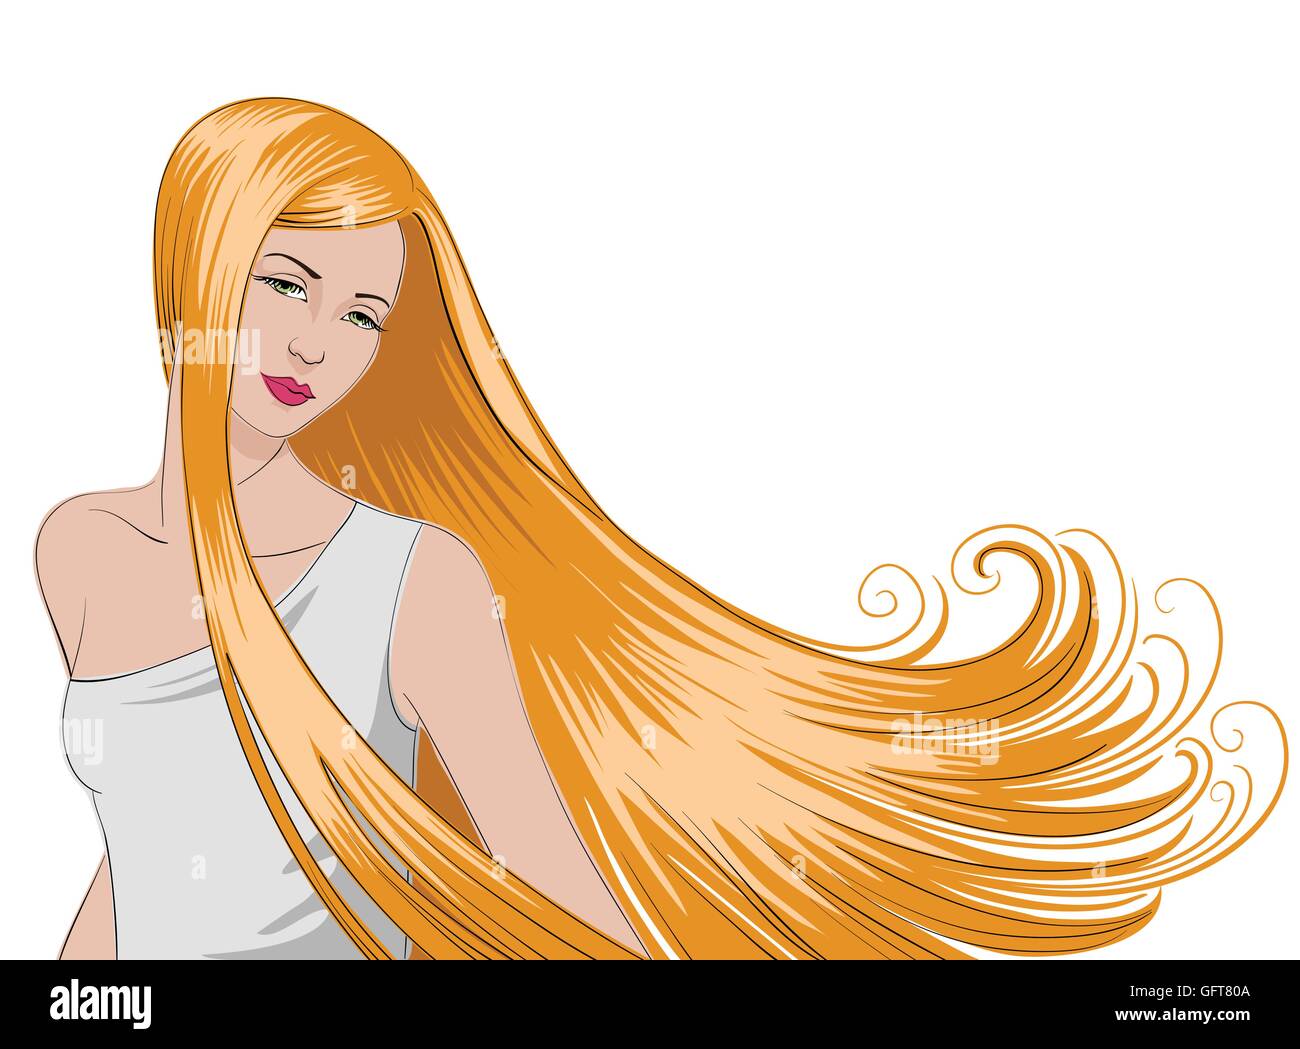 Jolie jeune fille avec de longs cheveux blonds, qui s'écoule. Illustration de Vecteur